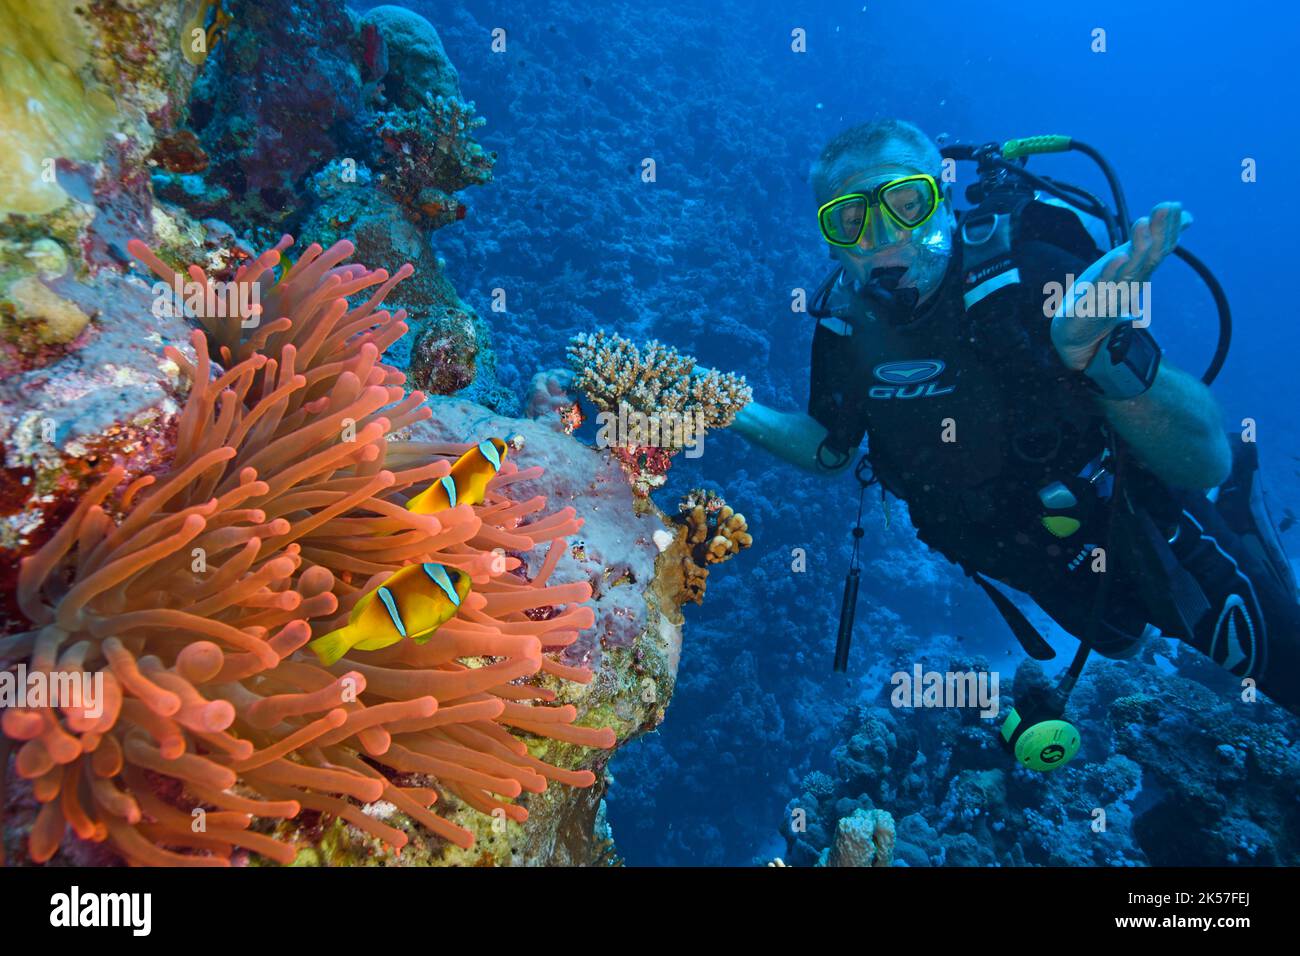 Égypte, Mer Rouge, un récif de corail avec des clownfishes (amphiprion bicinctus) et une anémone Banque D'Images